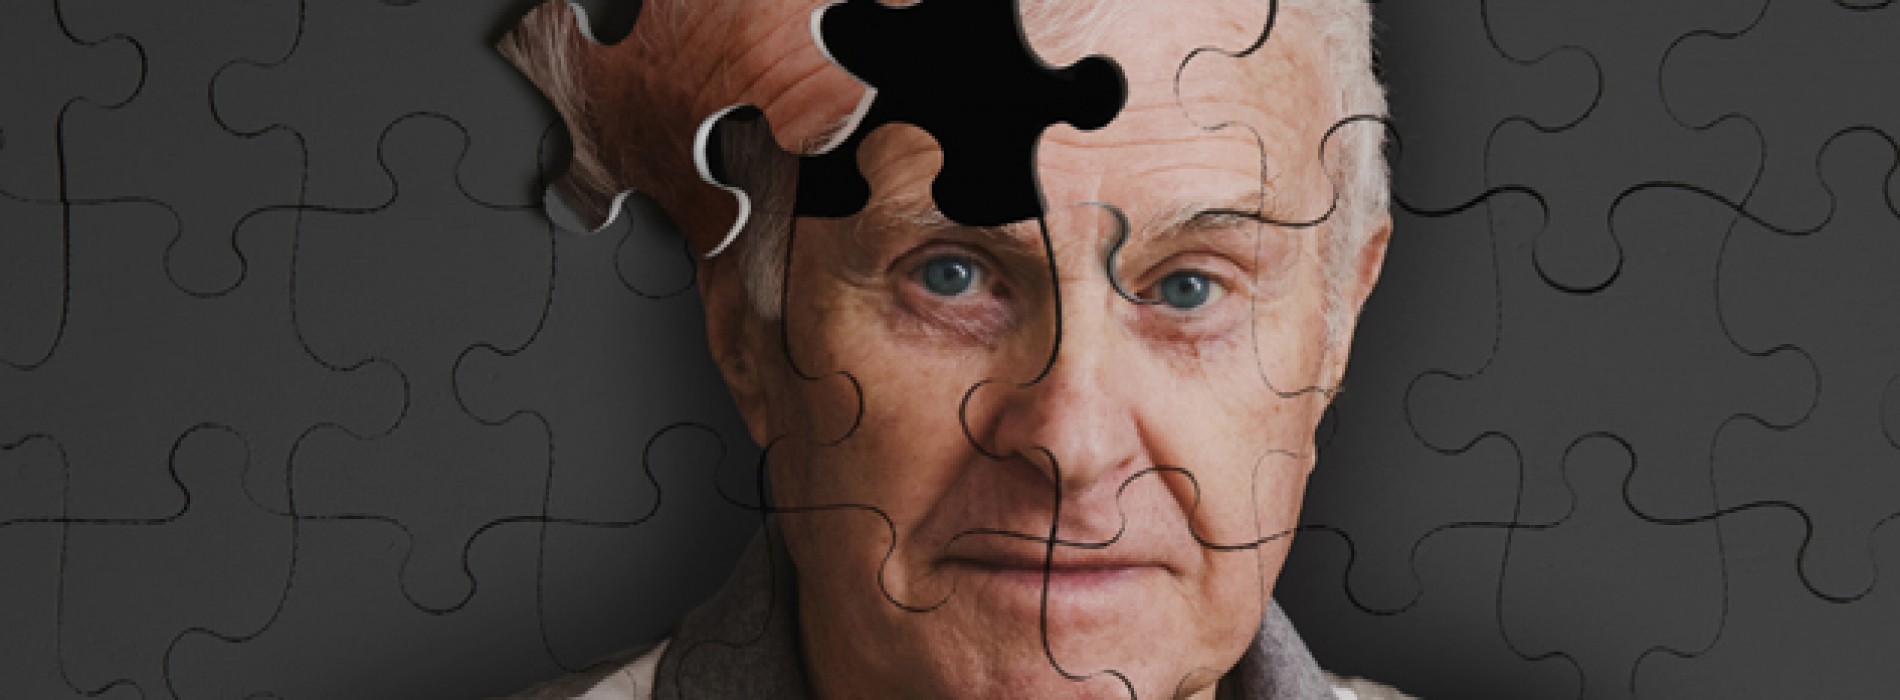 Αλτσχάιμερ: Με τεστ μπορούν πλέον να διαγνωστούν τα προειδοποιητικά σημάδια